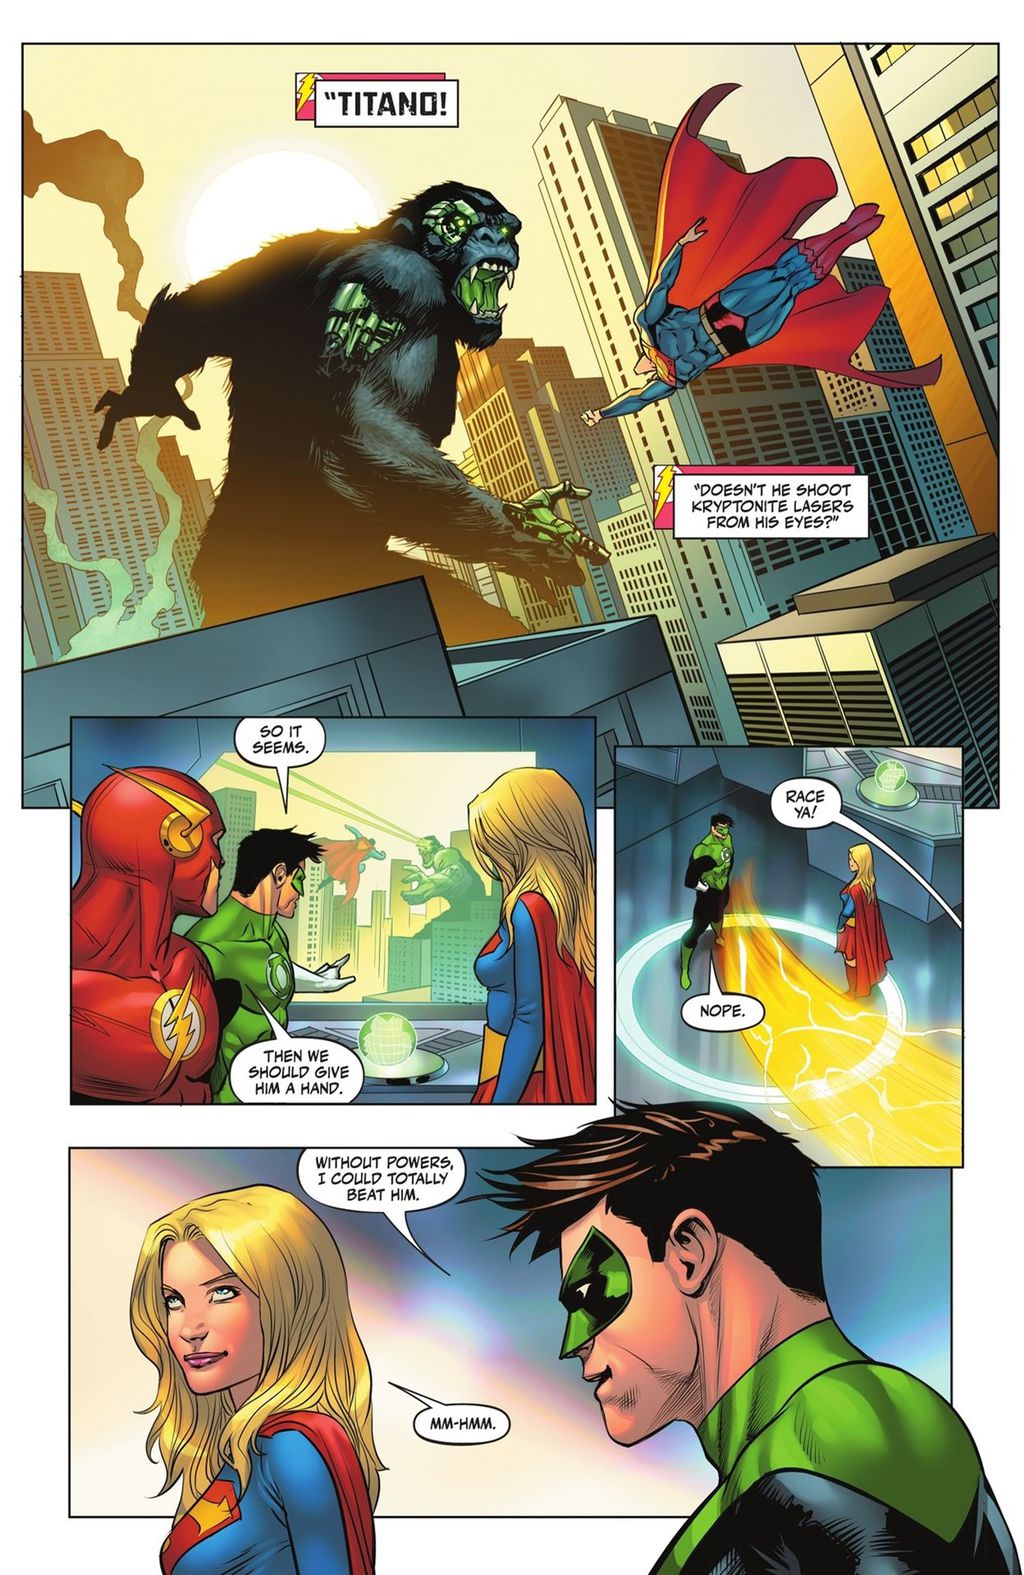 Lanterna Verde diz que, sem poderes, ele conseguiria vencer o Flash em uma corrida (Imagem: Reprodução/DC Comics)